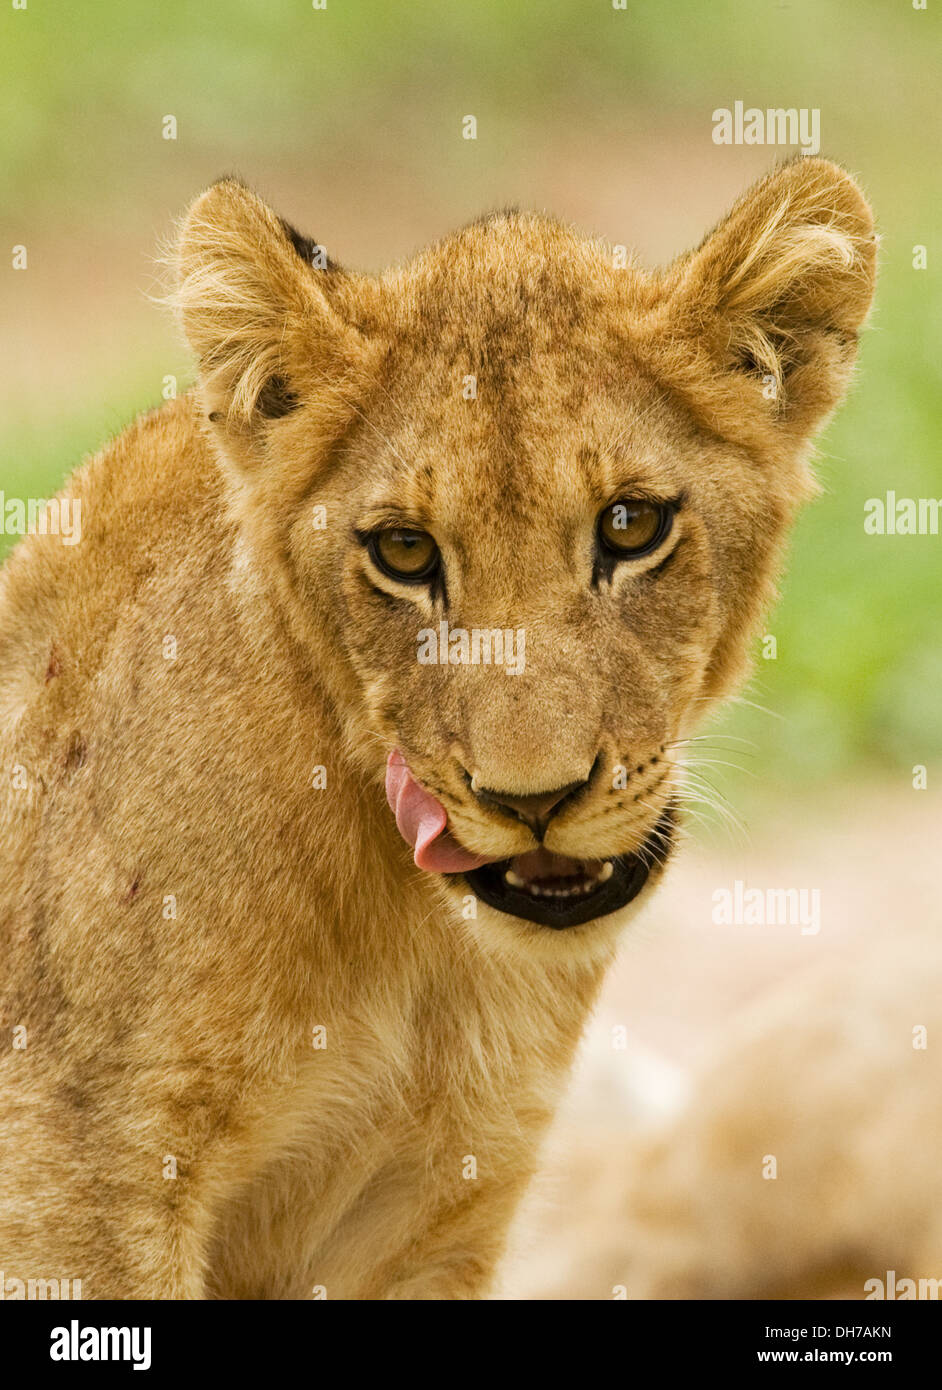 Lion, big 5, Panthera Leo, Stock Photo